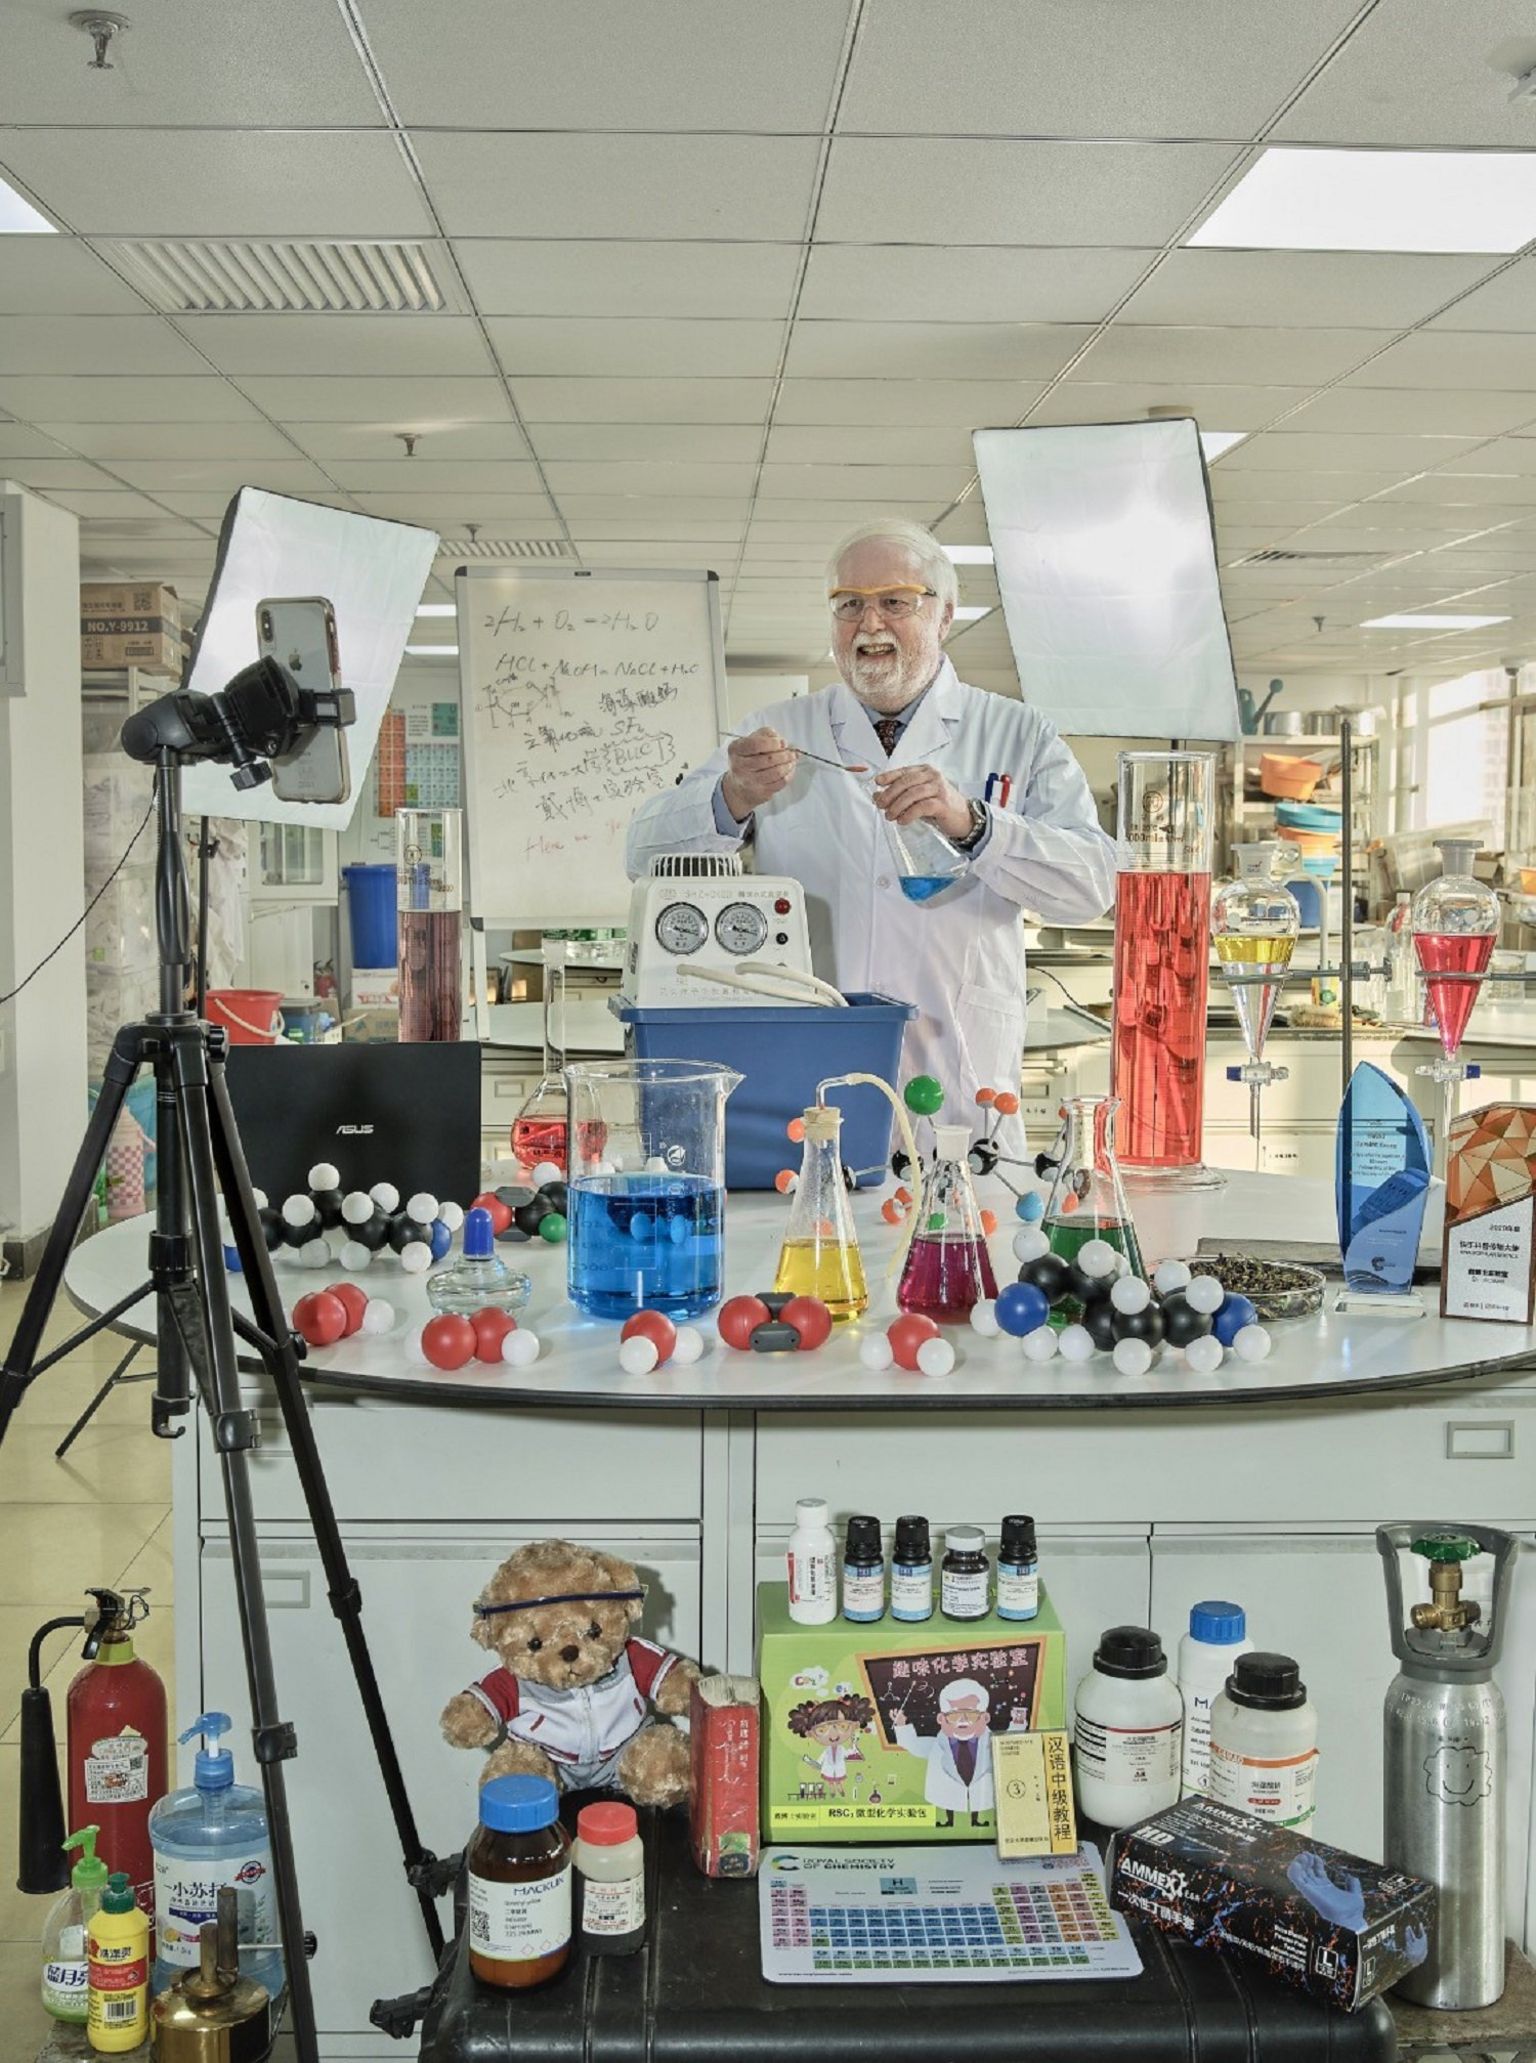 Профессор стоит перед столом в лаборатории, заставленной мензурками, цилиндрами, оборудованием для титрования и другим лабораторным оборудованием, наполненным разноцветными жидкостями